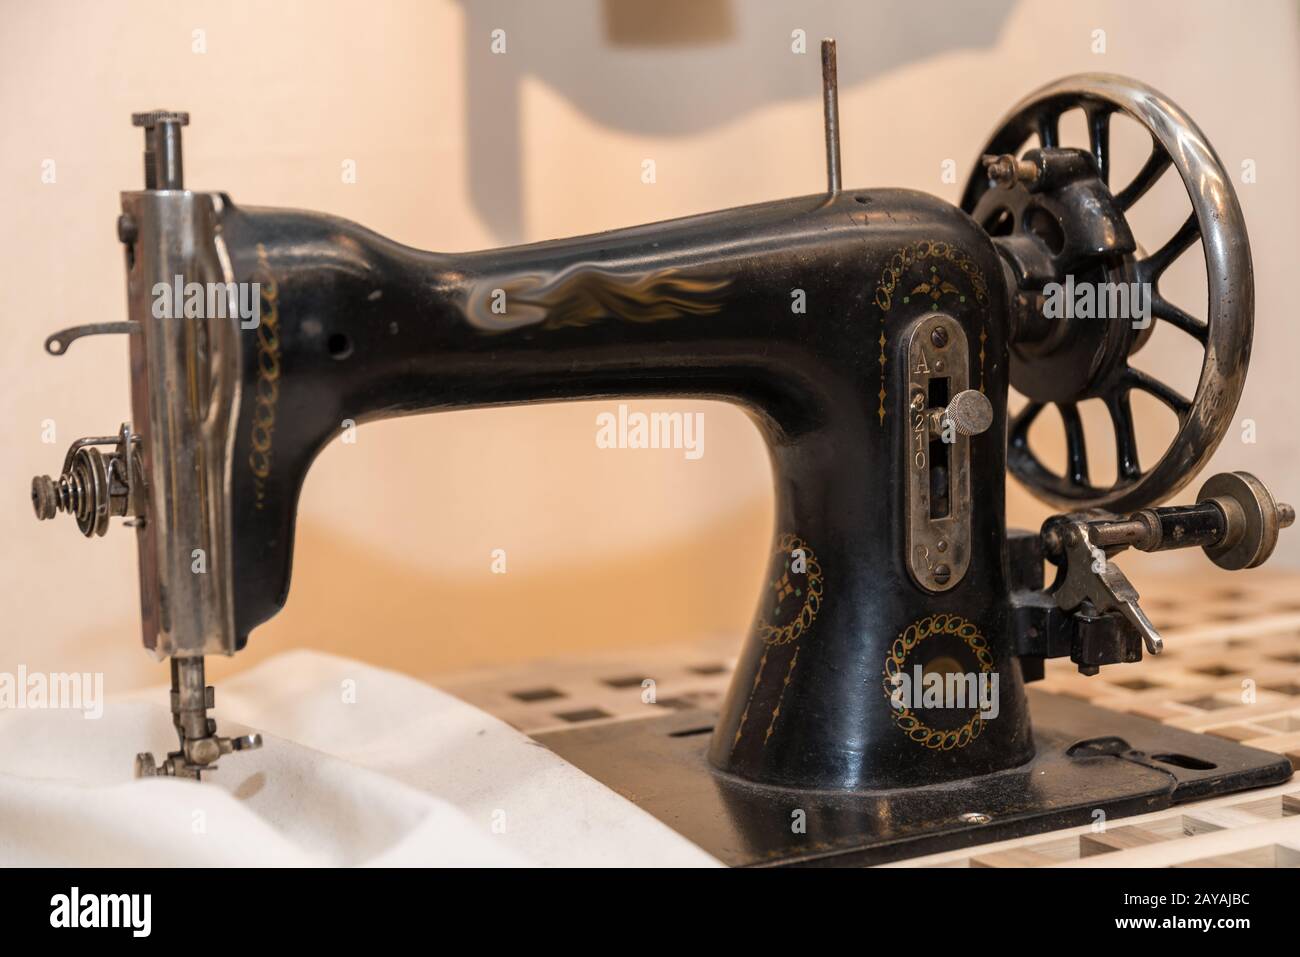 ancienne machine à coudre nostalgique - tailleur Banque D'Images